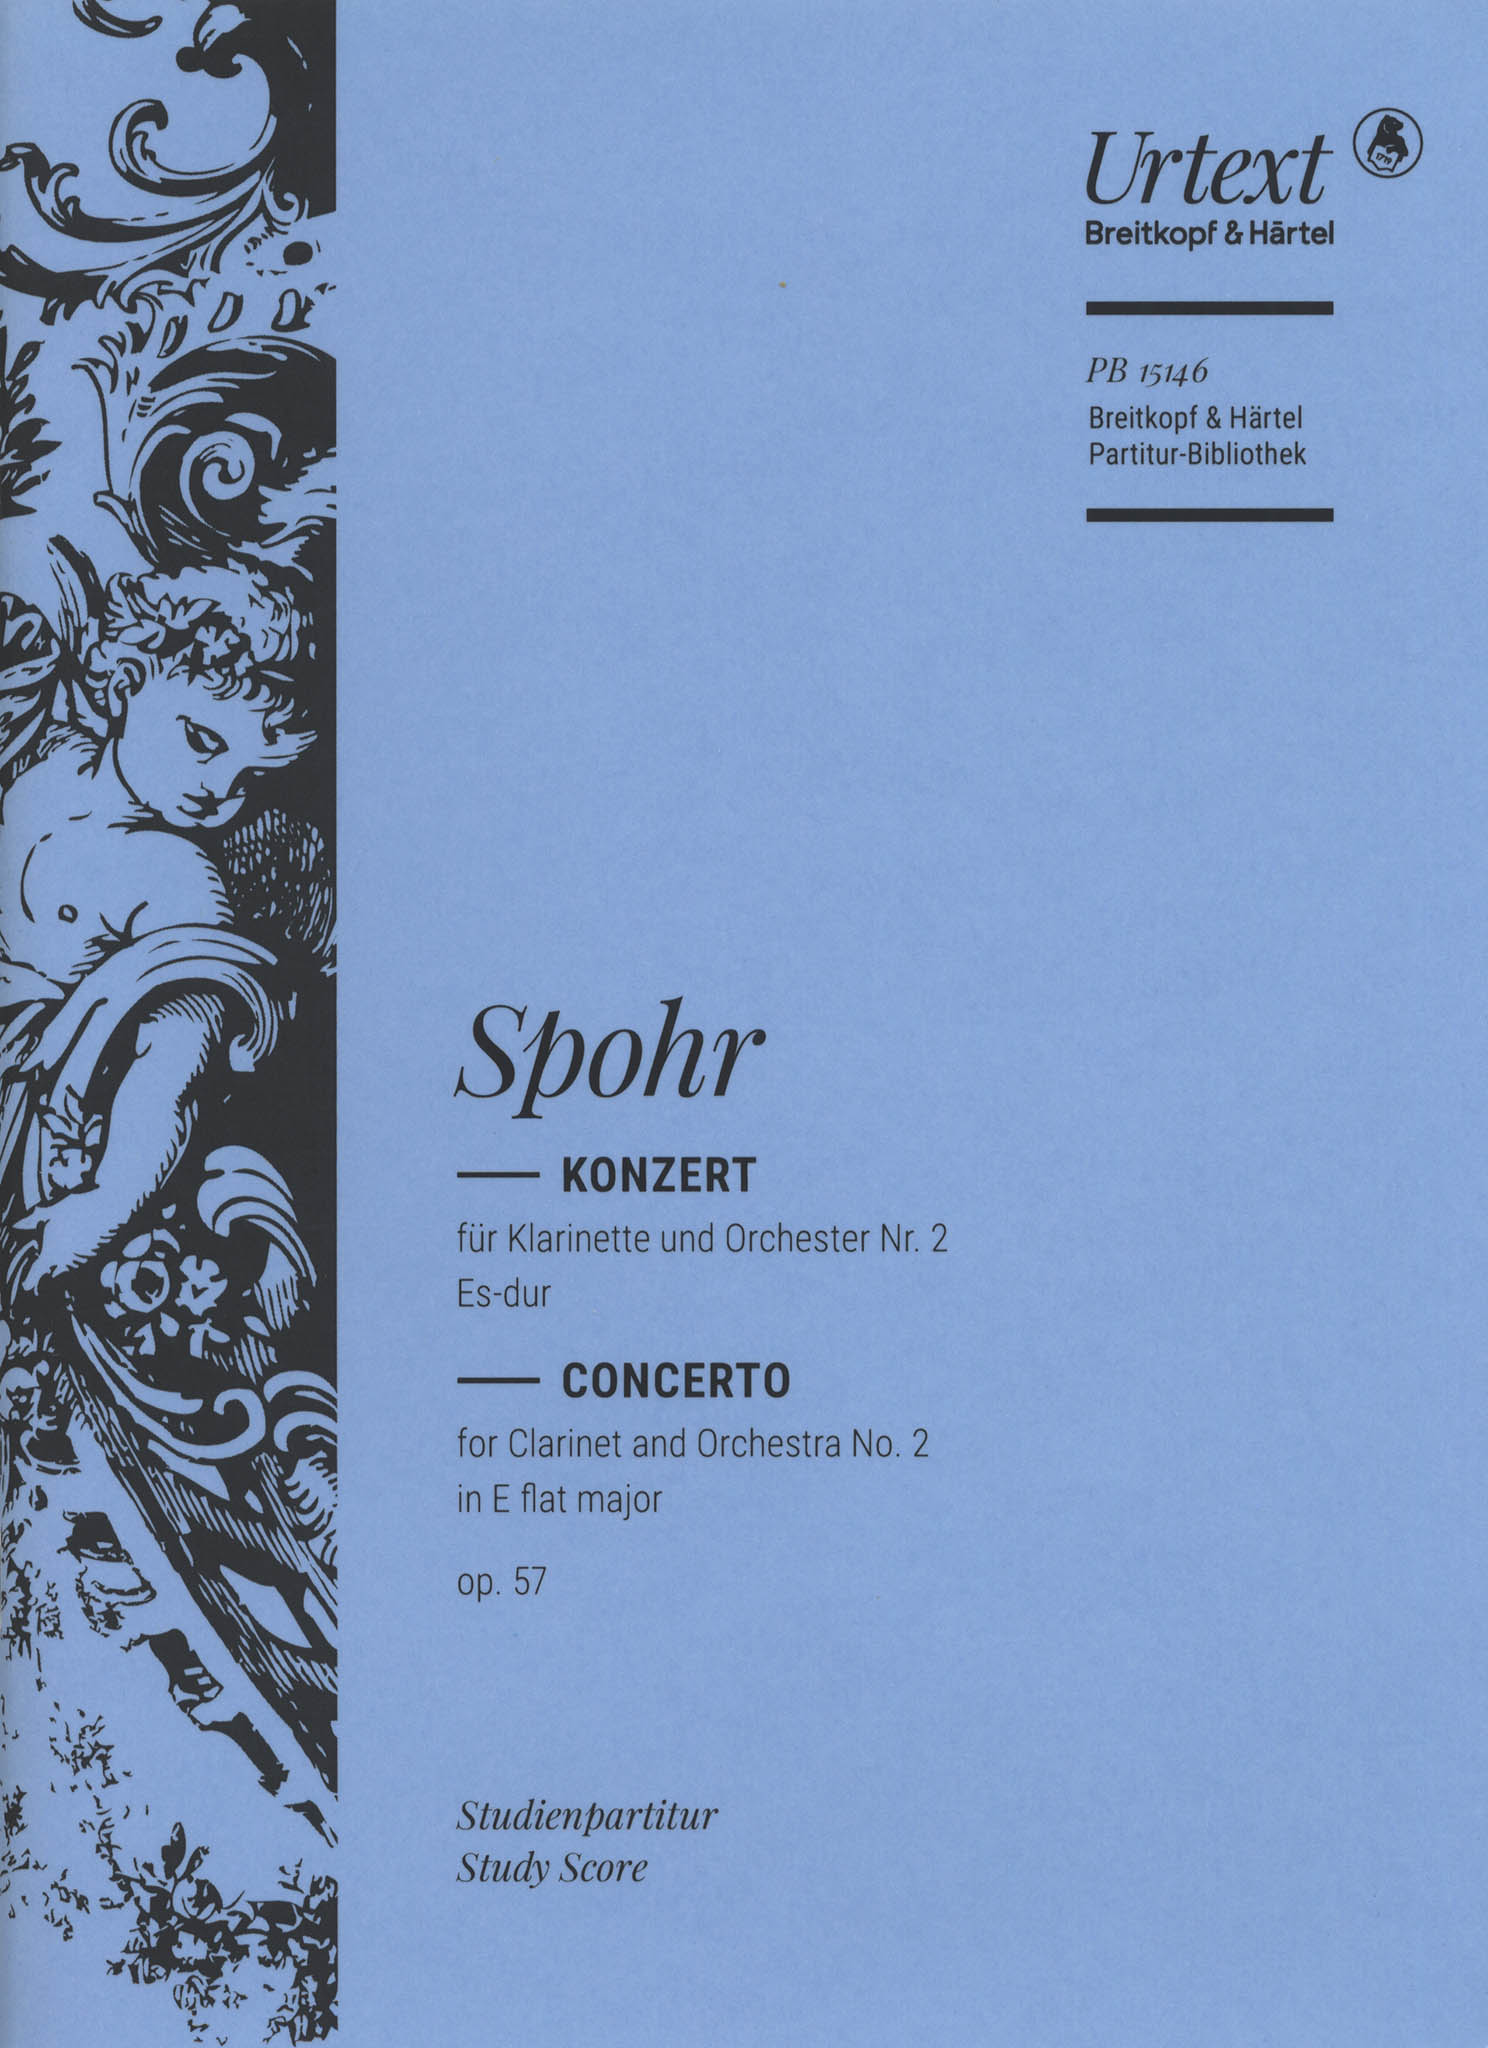 Spohr Clarinet Concerto No. 2 in E-flat Major, Op. 57 mini score cover